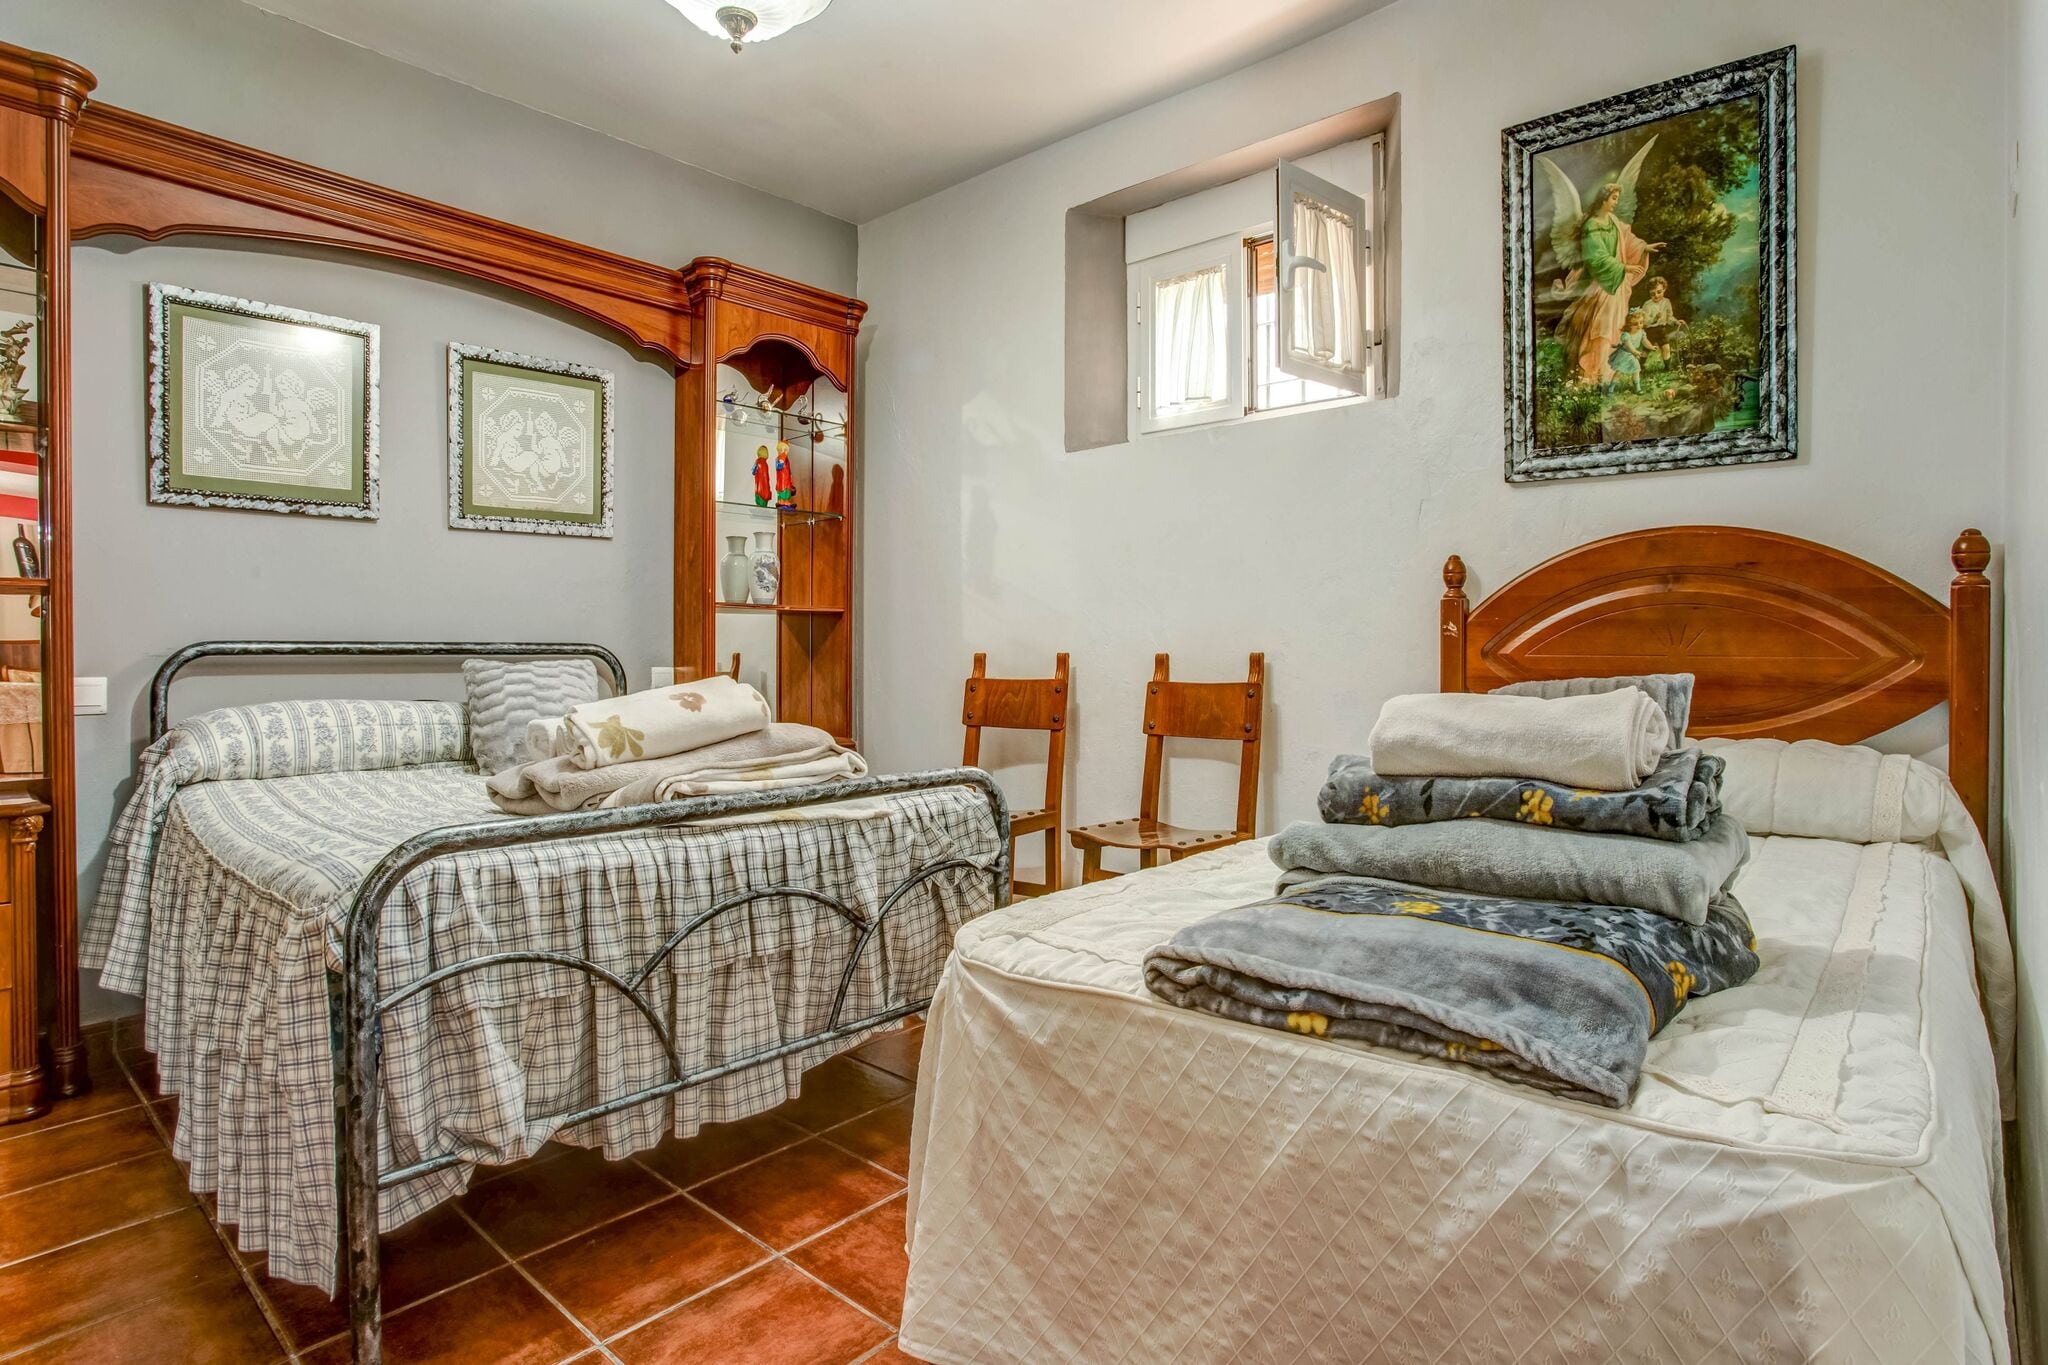 Maison de vacances andalouse confortable dans un quartier charmant.